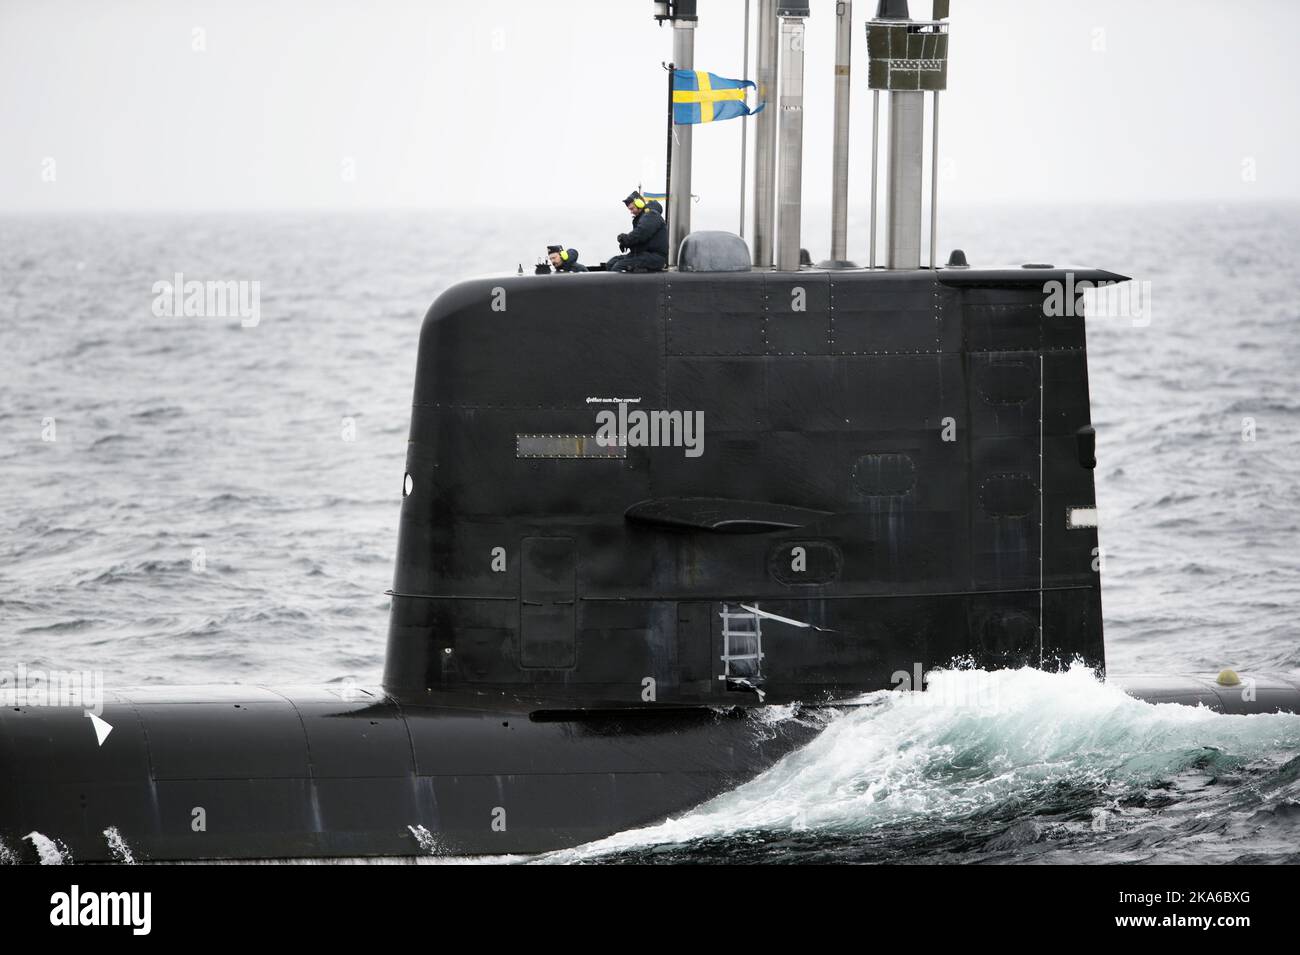 Bergen, Norvège 20150504. L'exercice sous-marin de l'OTAN, Dynamic Mongoose 2015, se déroule ces jours-ci dans les eaux au large de Bergen. Voici le sous-marin suédois Gotland. Photo: Marit HomMedal / NTB scanpix Banque D'Images